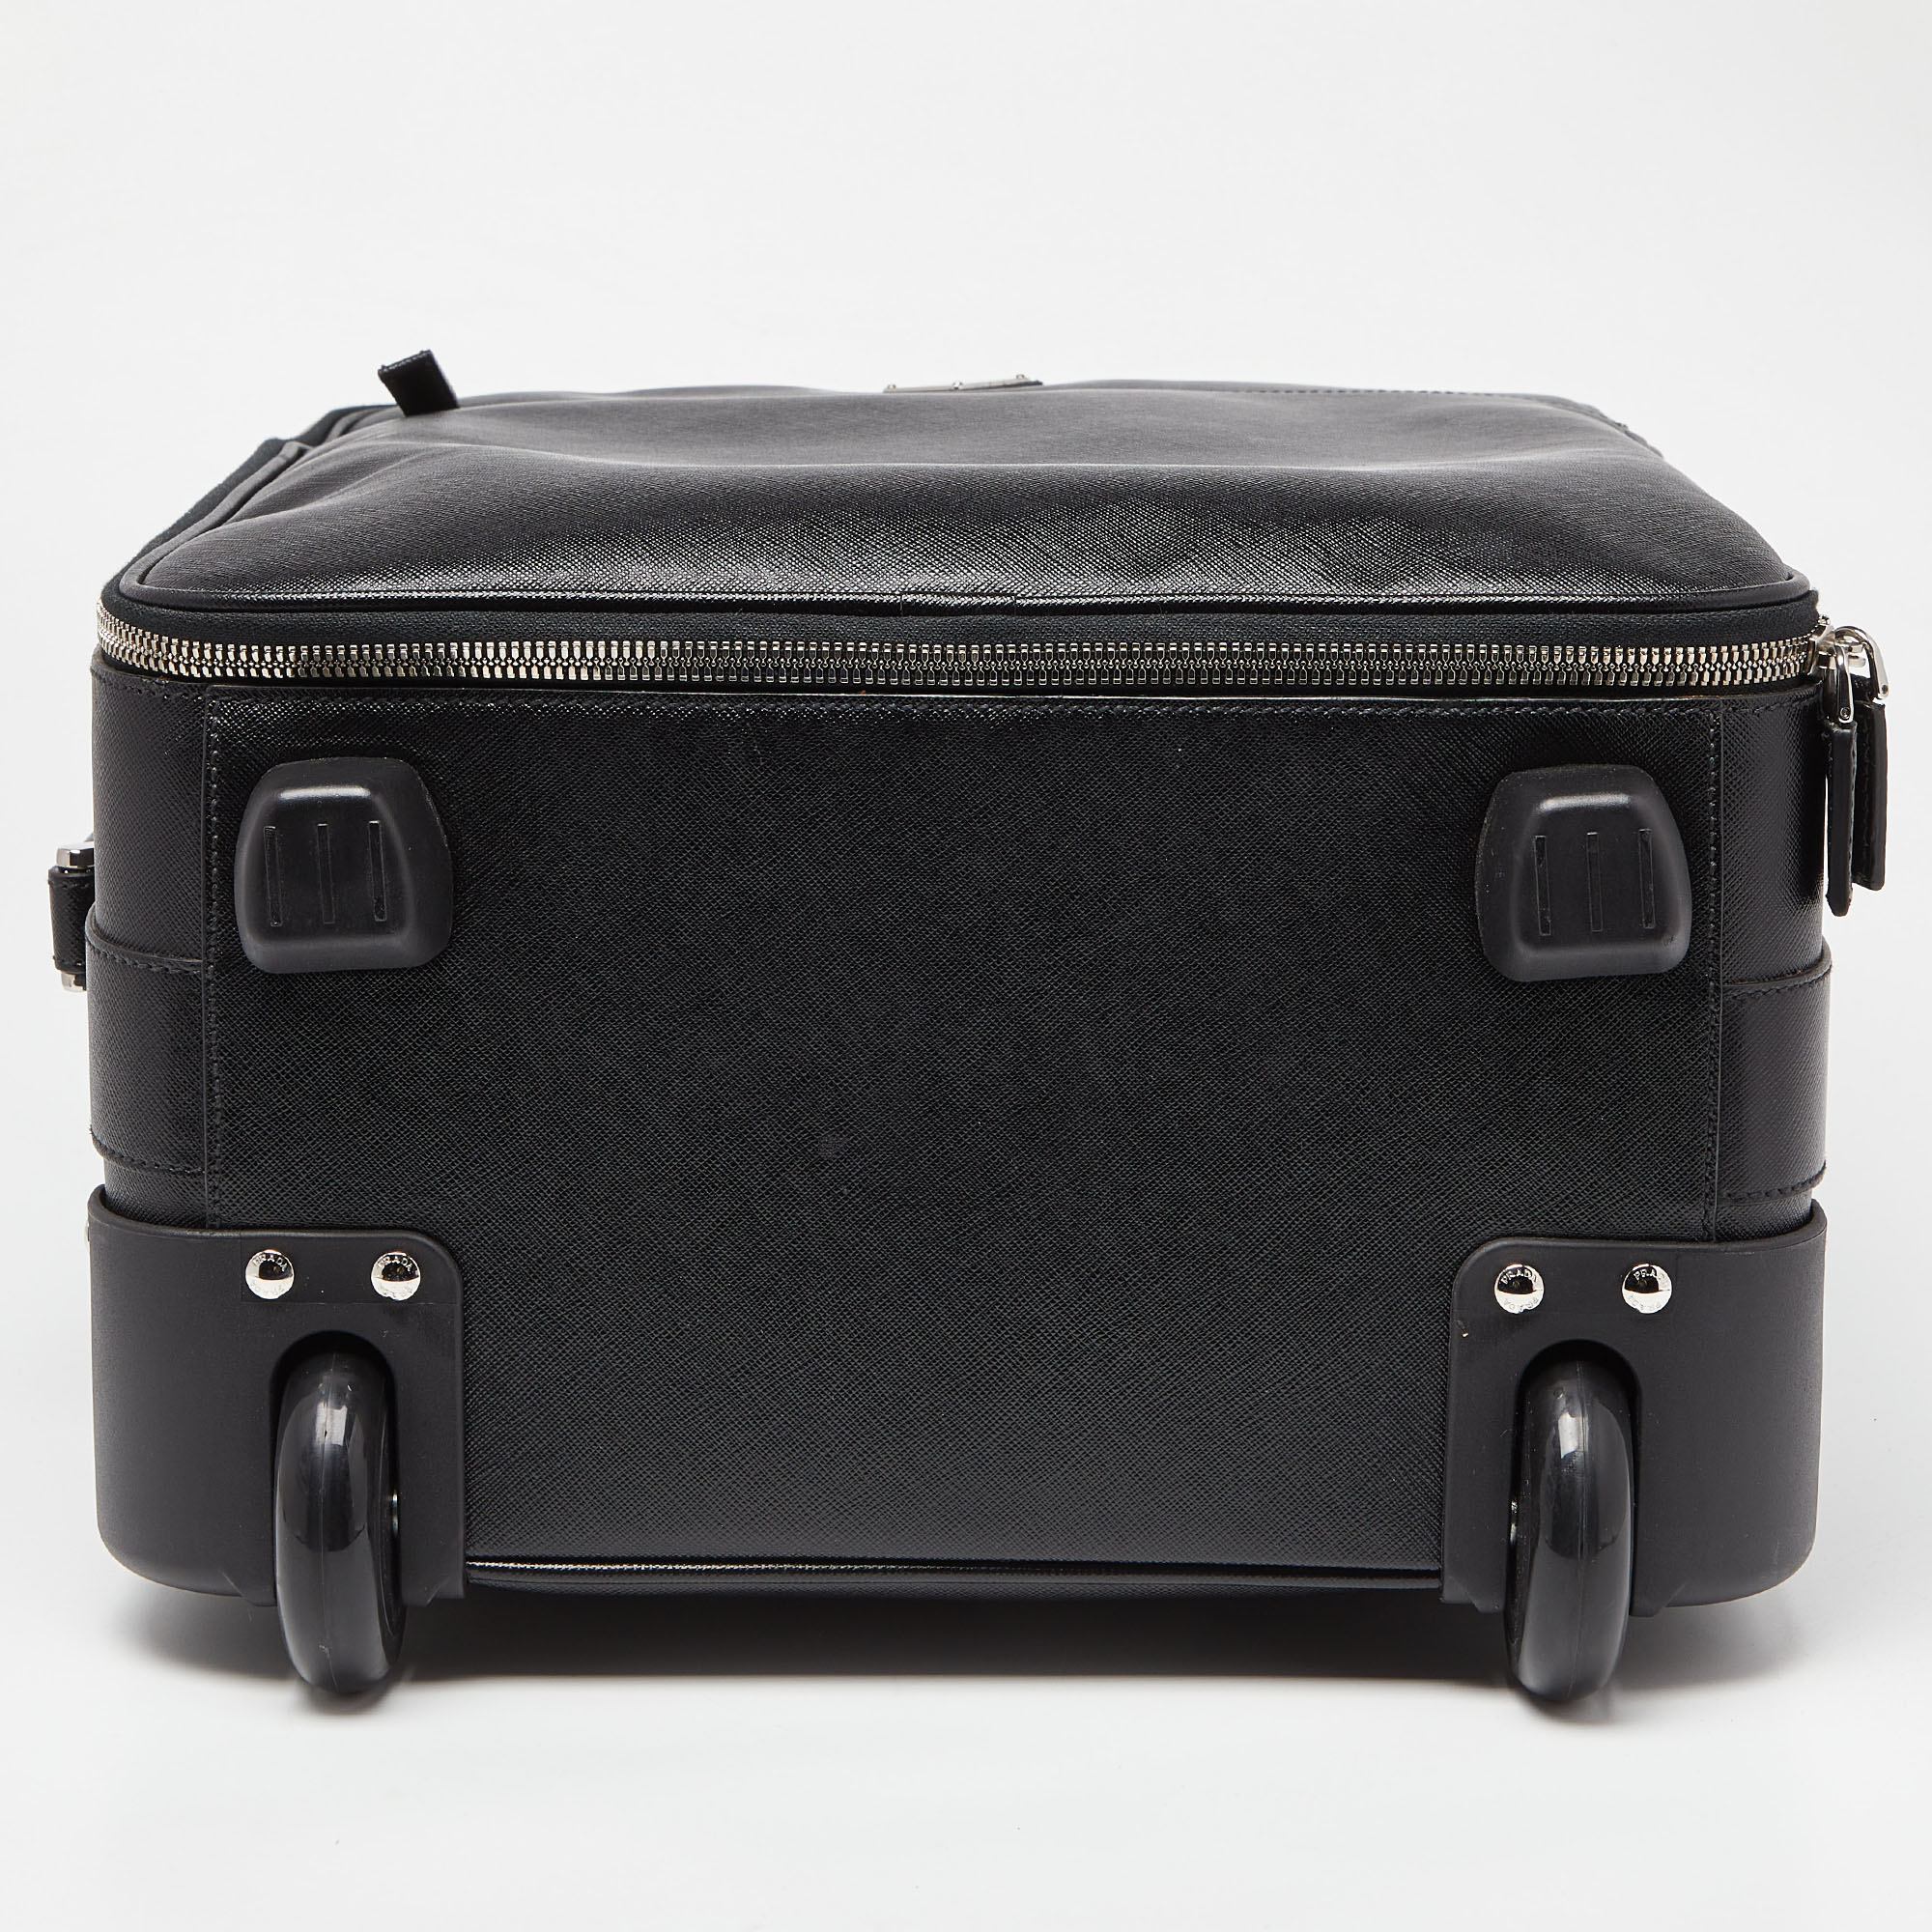 Prada Black Saffiano Leather Travel Rolling Trolley Luggage